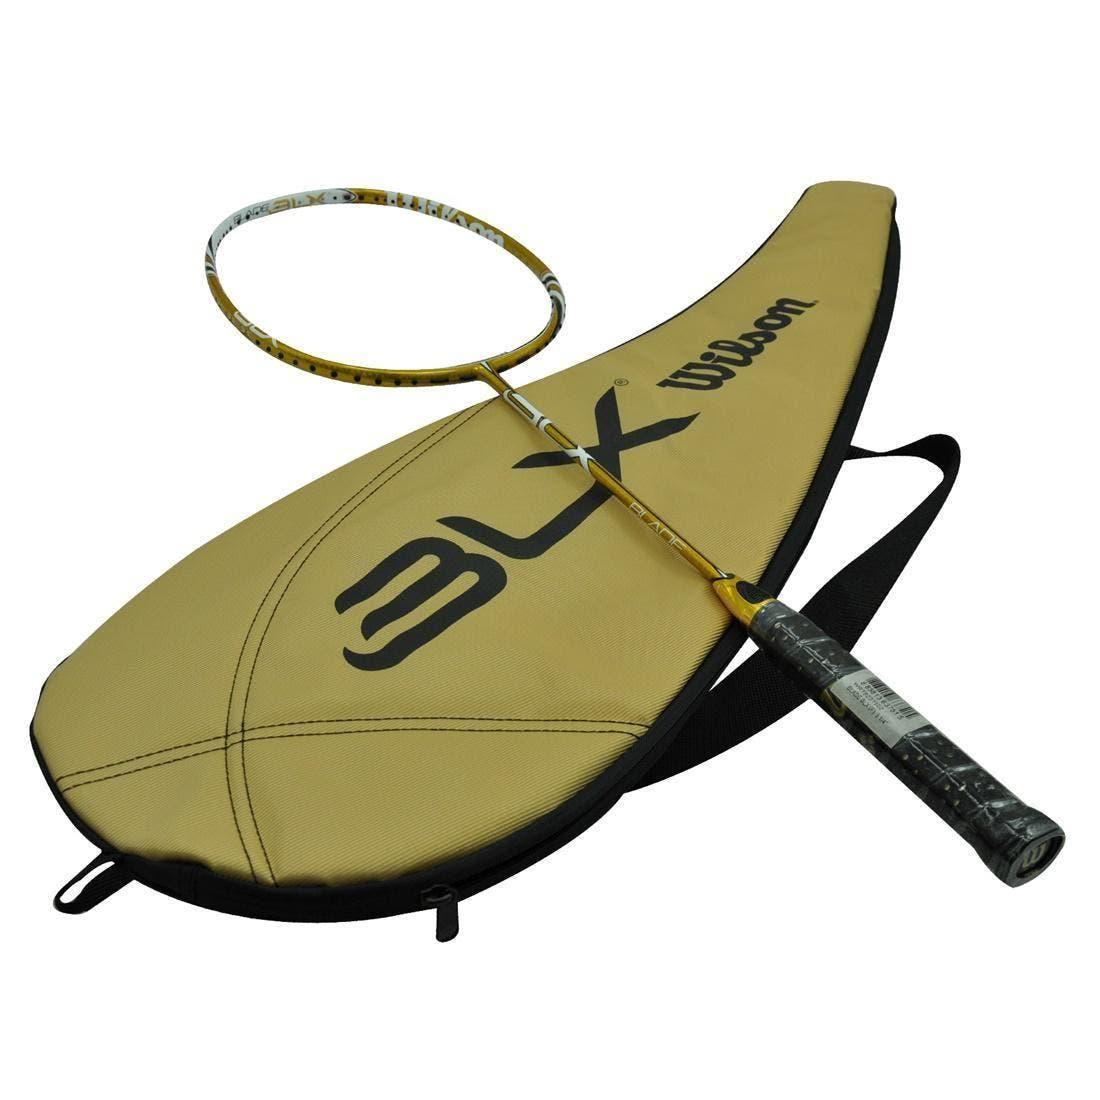 Wilson Badminton Racquet - Blx Blade Gold -Top Range Wilson BASALT fibers Racket